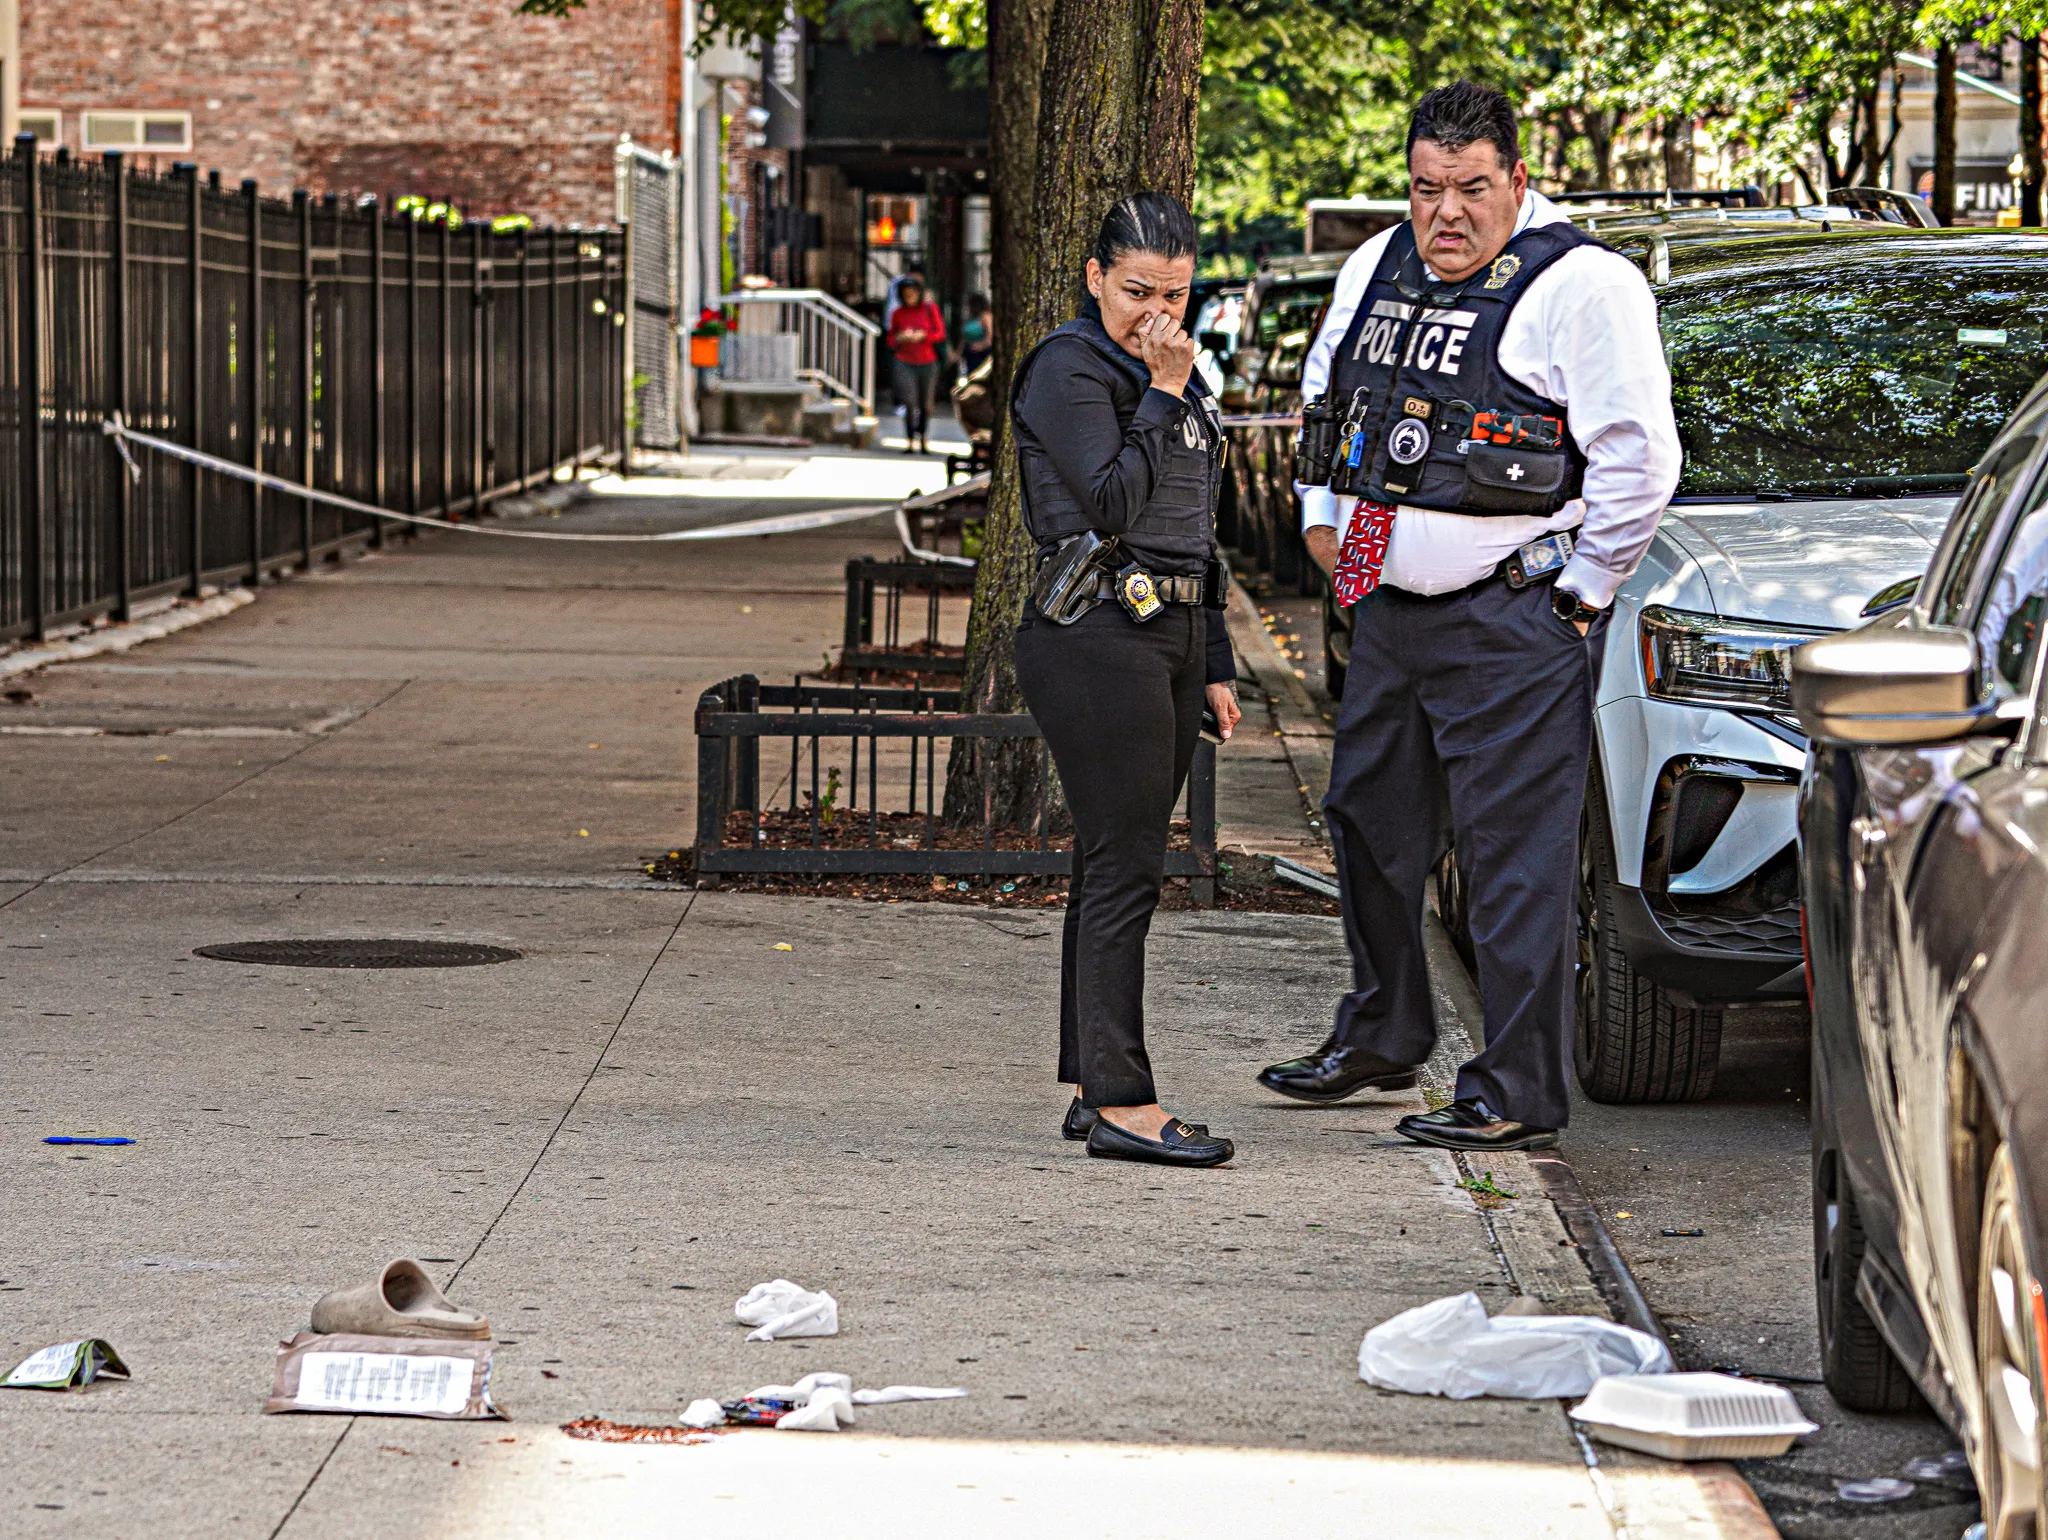 Police at Harlem shooting scene investigate